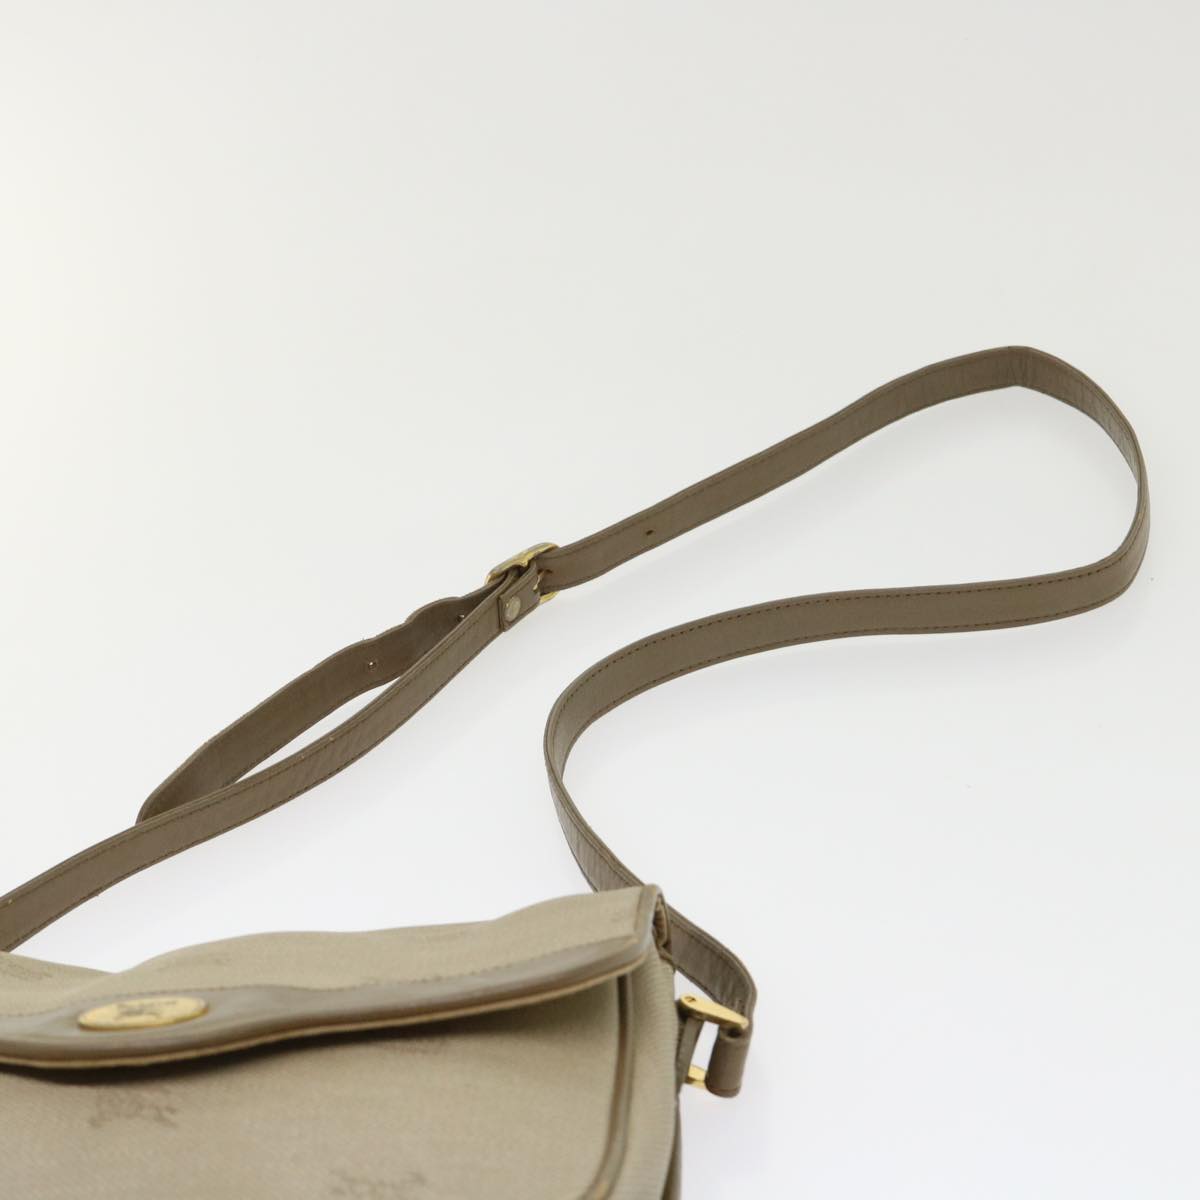 Burberrys Shoulder Bag PVC Leather Beige Auth bs6453